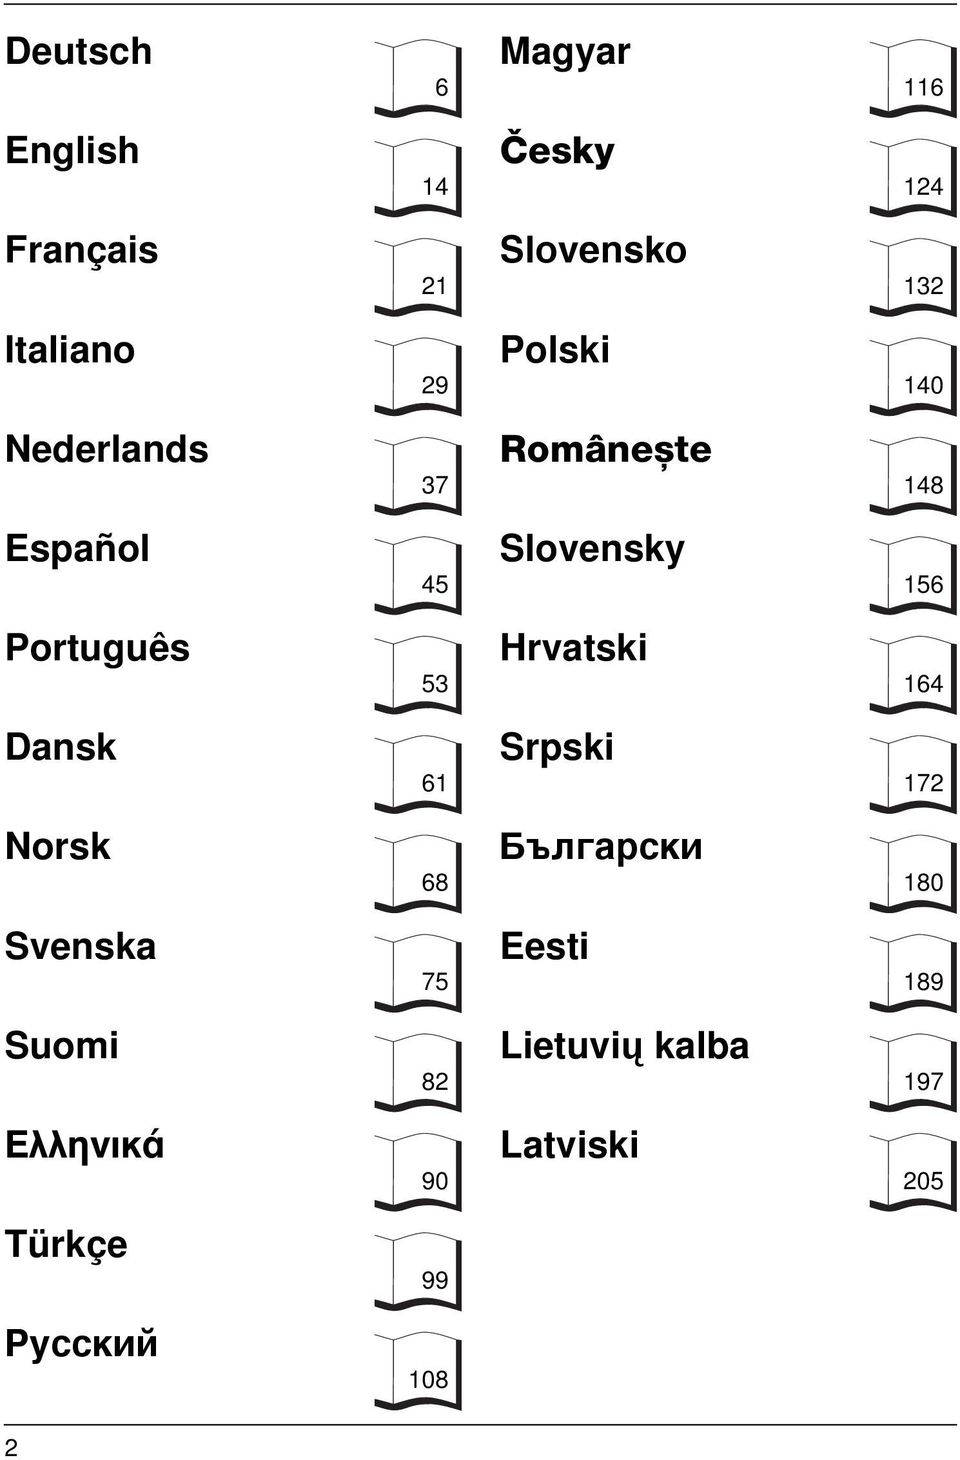 Slovensky Hrvatski Srpski ½æ apc å Eesti Lietuvių kalba Latviski 6 14 21 29